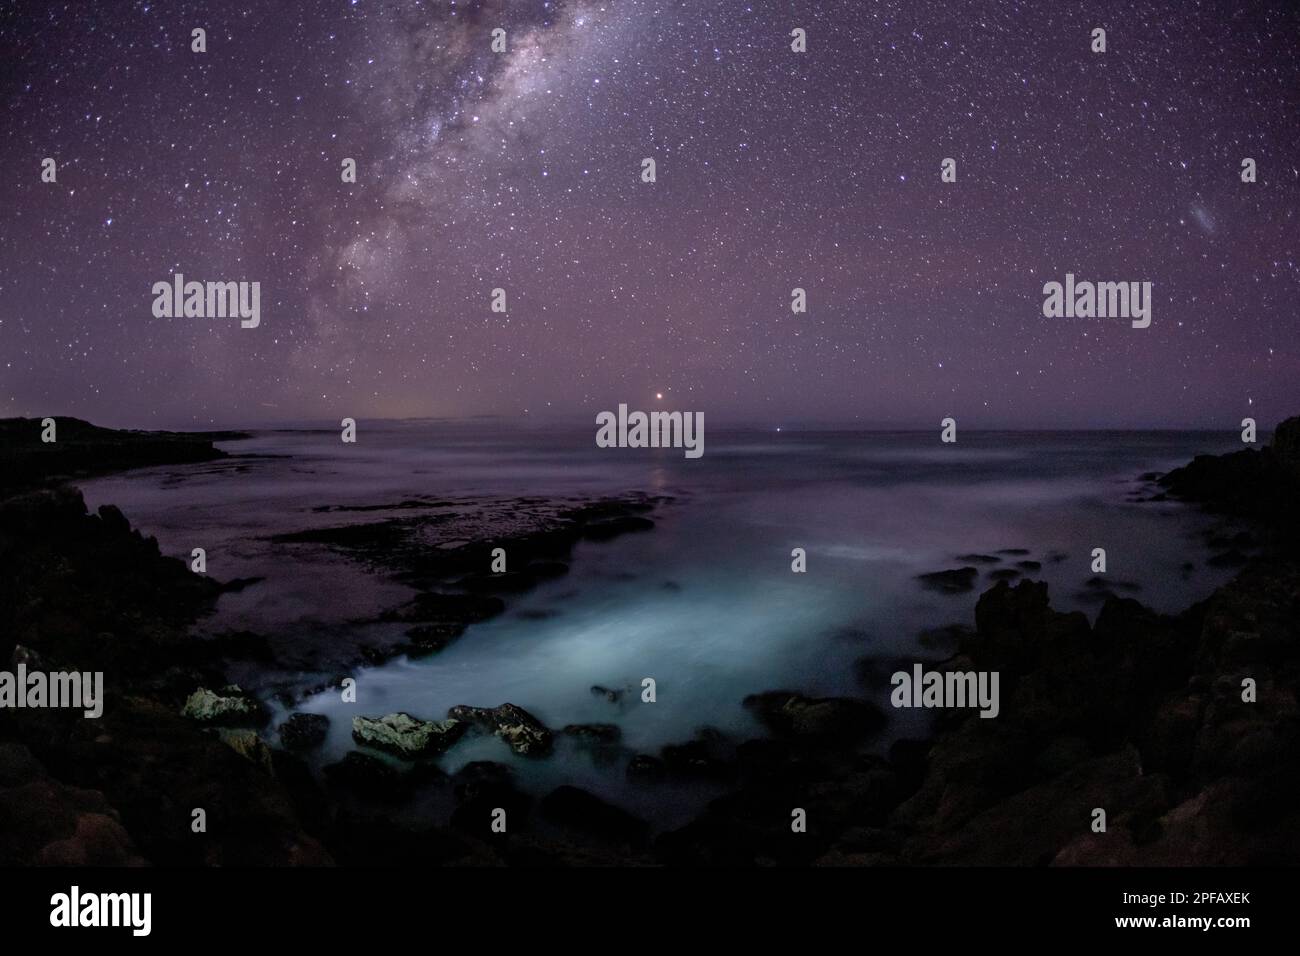 Milky Way et étoiles sur l'océan Austral. Baie de Sleaford. Australie méridionale. Banque D'Images